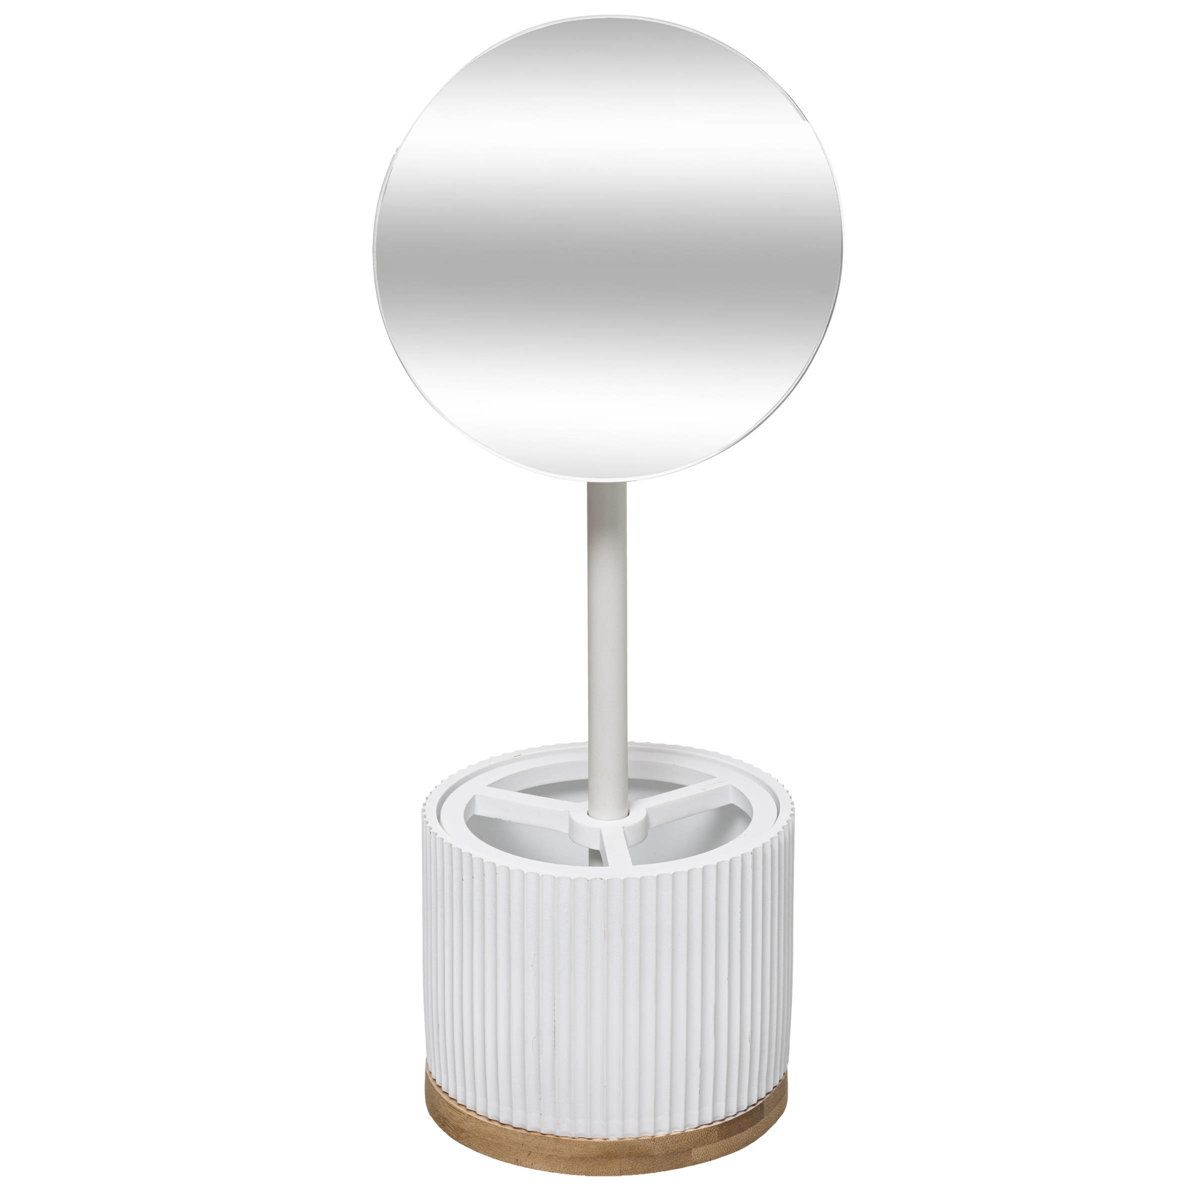 5five Simply Smart Kosmetické zrcadlo MODERN s organizérem na šperky, 35 cm, bílé - EMAKO.CZ s.r.o.